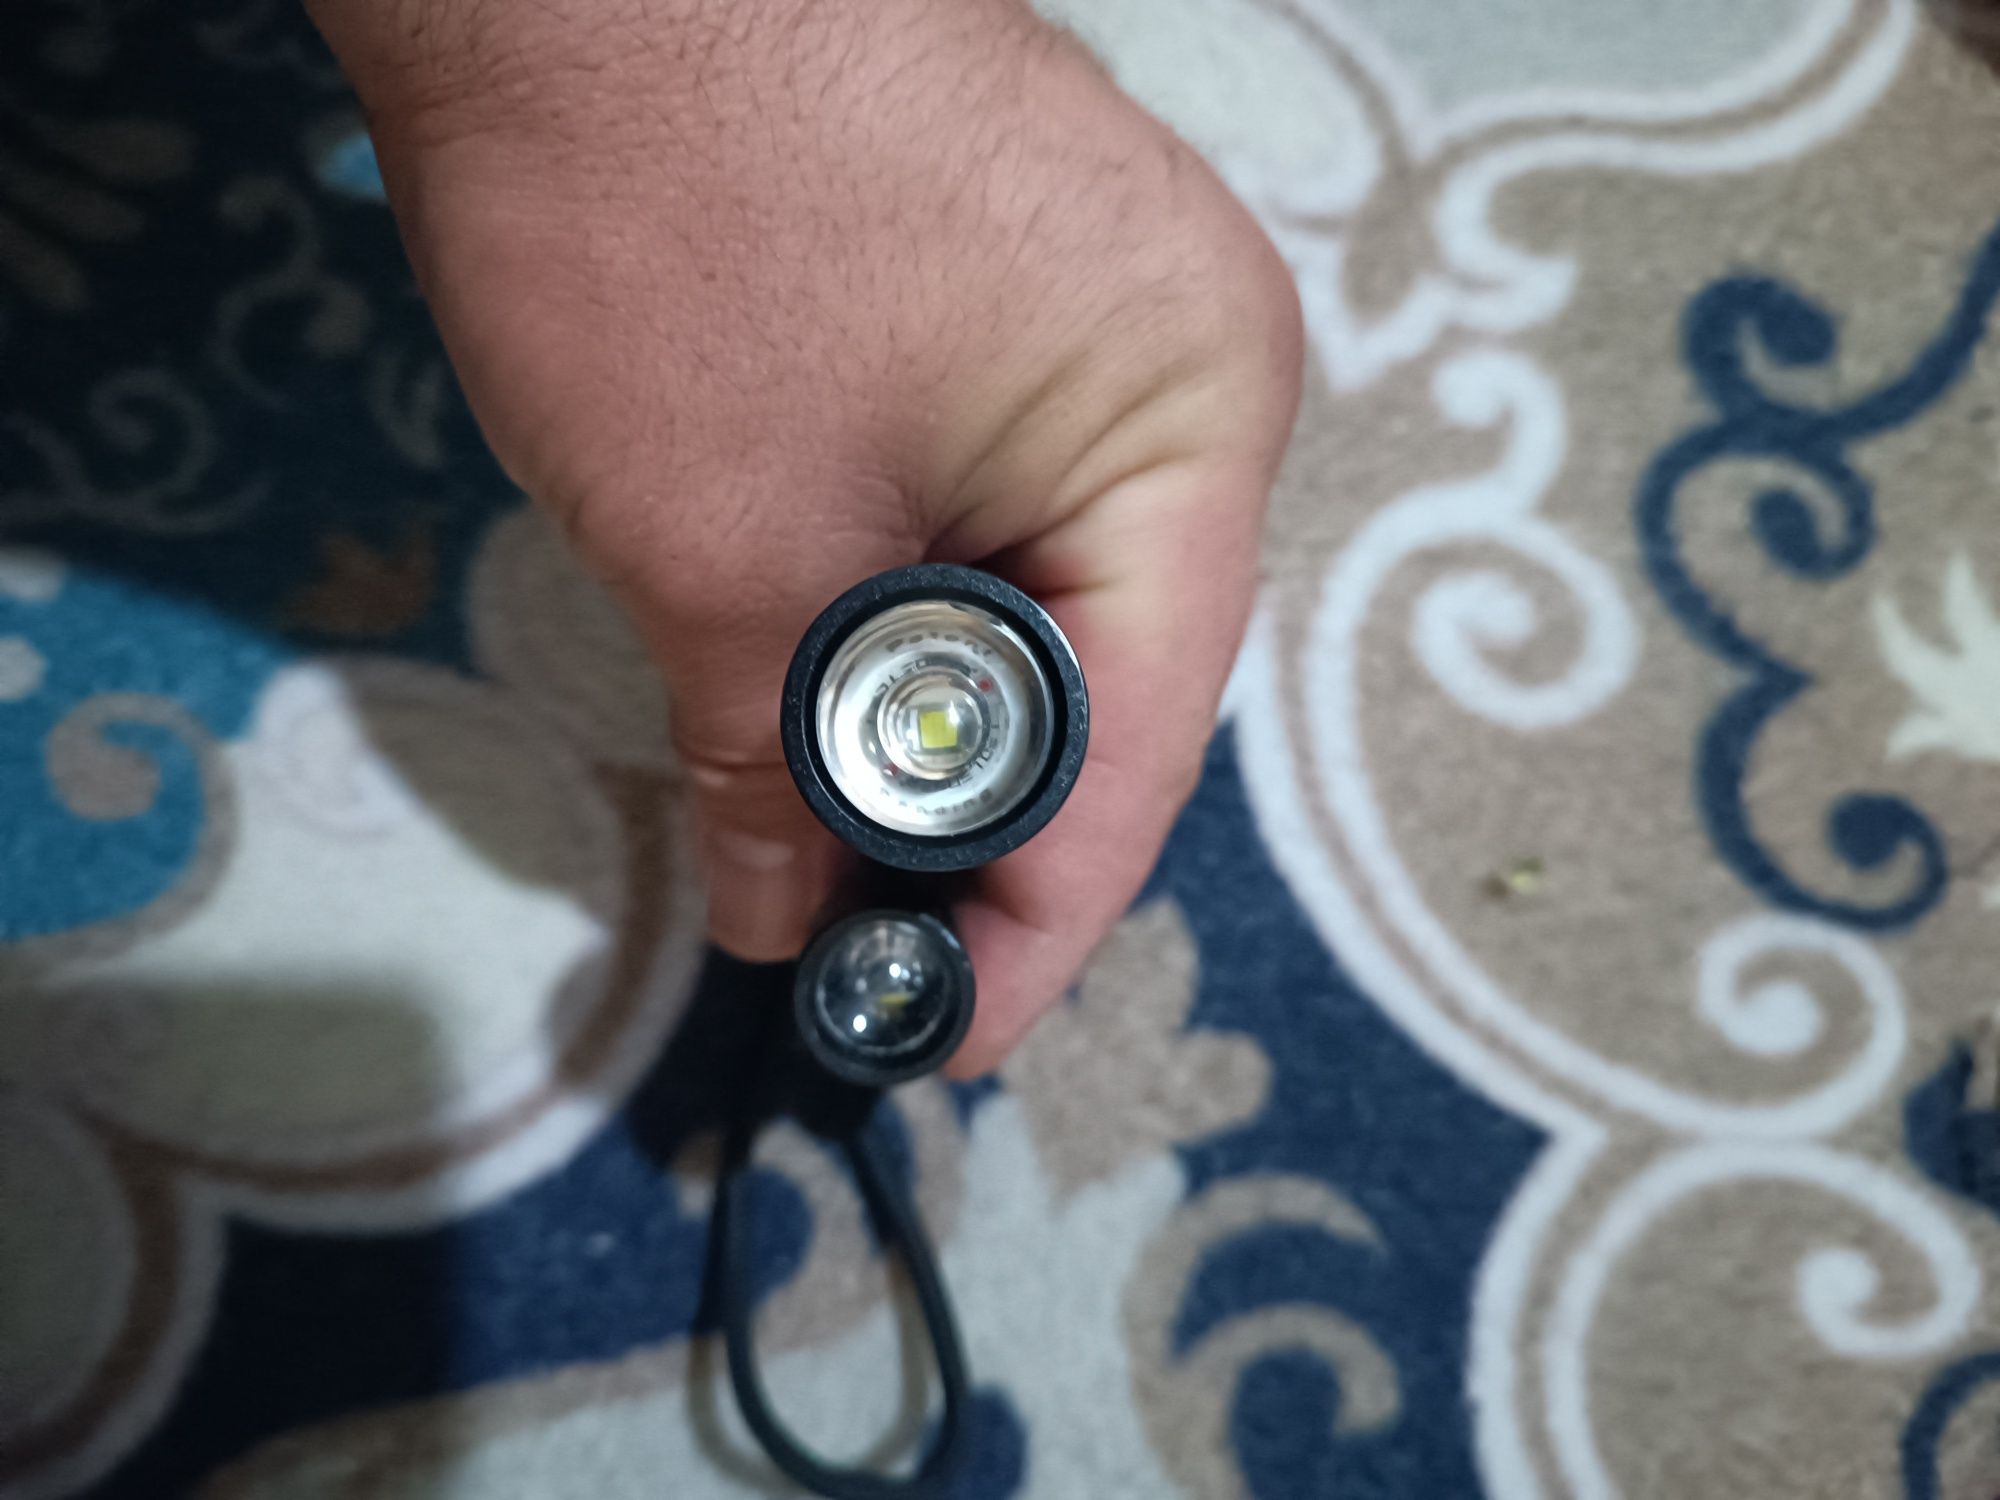 LED Lenser P5 – компактный ручной фонарь